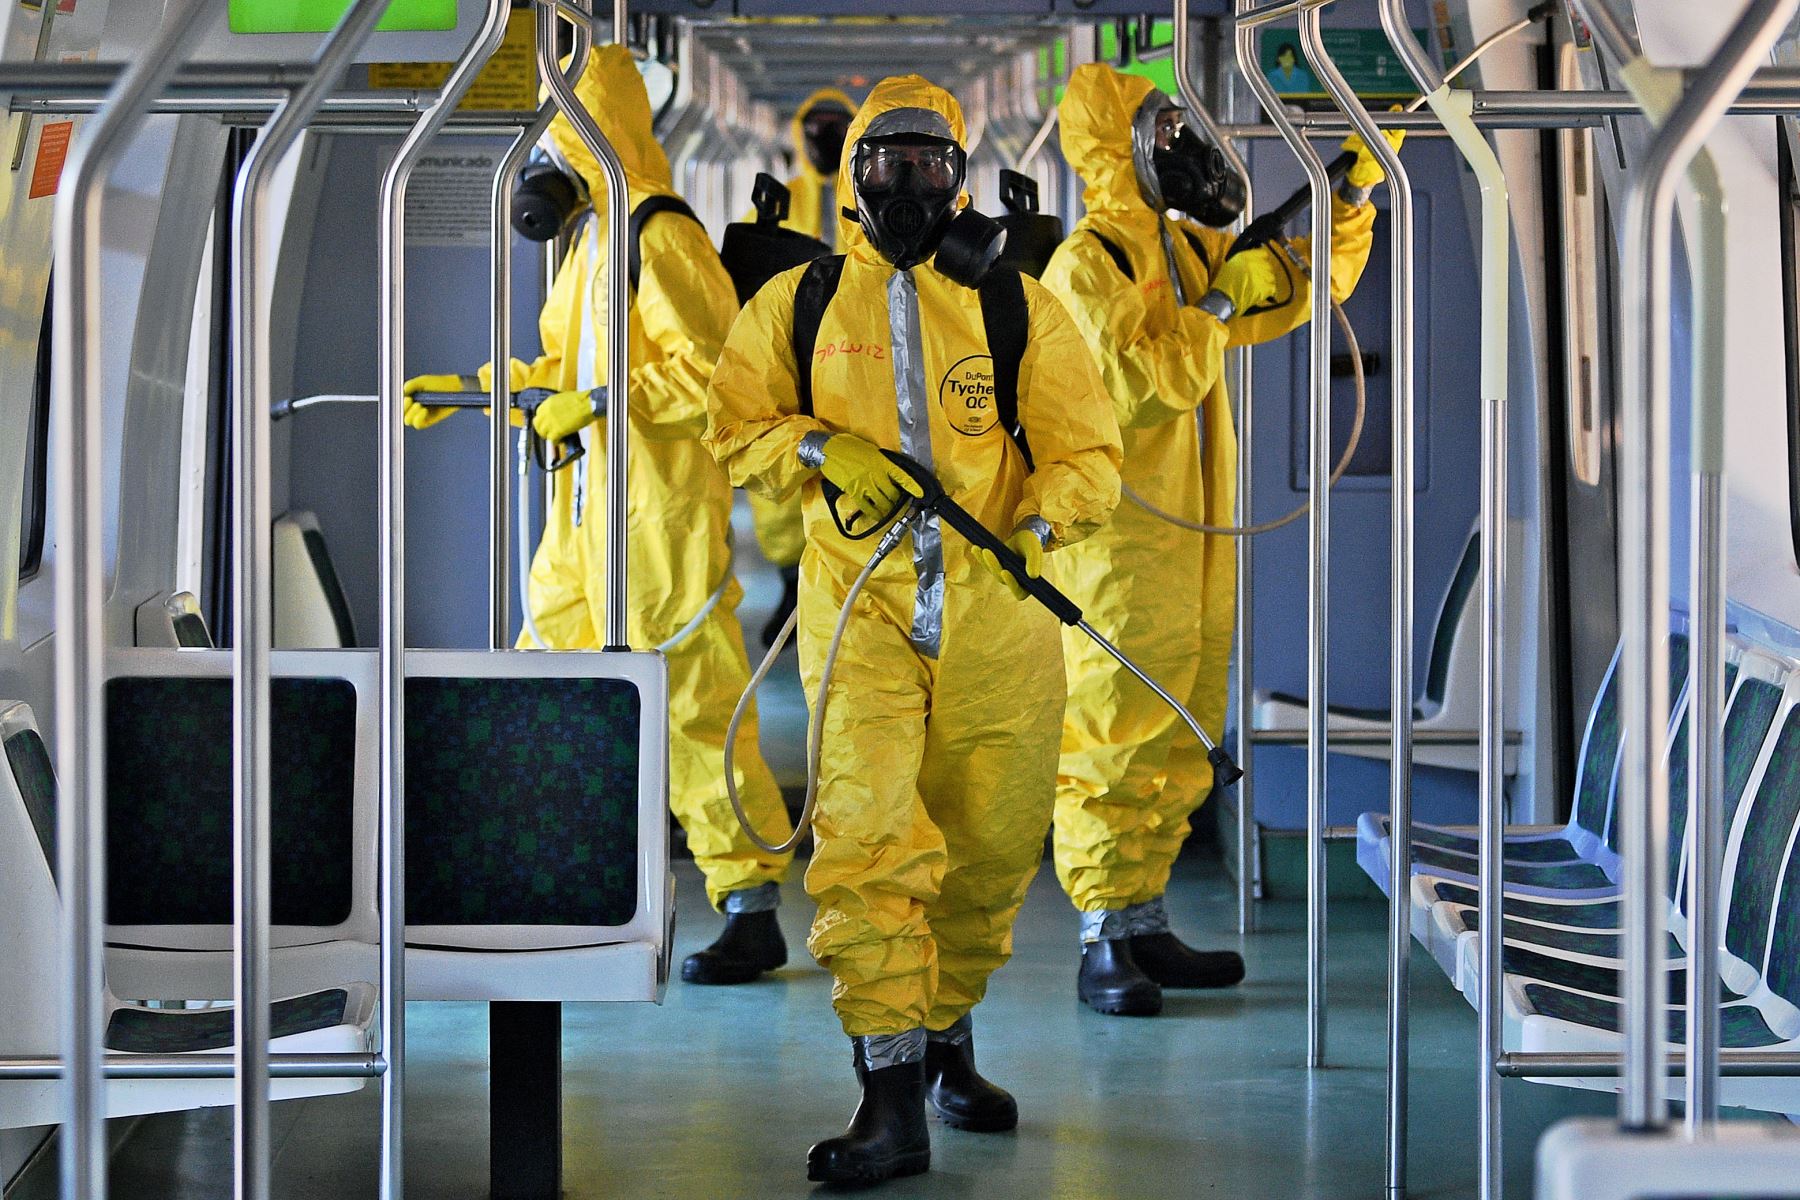 Los soldados brasileños desinfectan la estación central del metro y sus alrededores, como medida contra la propagación del coronavirus, COVID-19, pandemia en Brasilia.
Foto: AFP